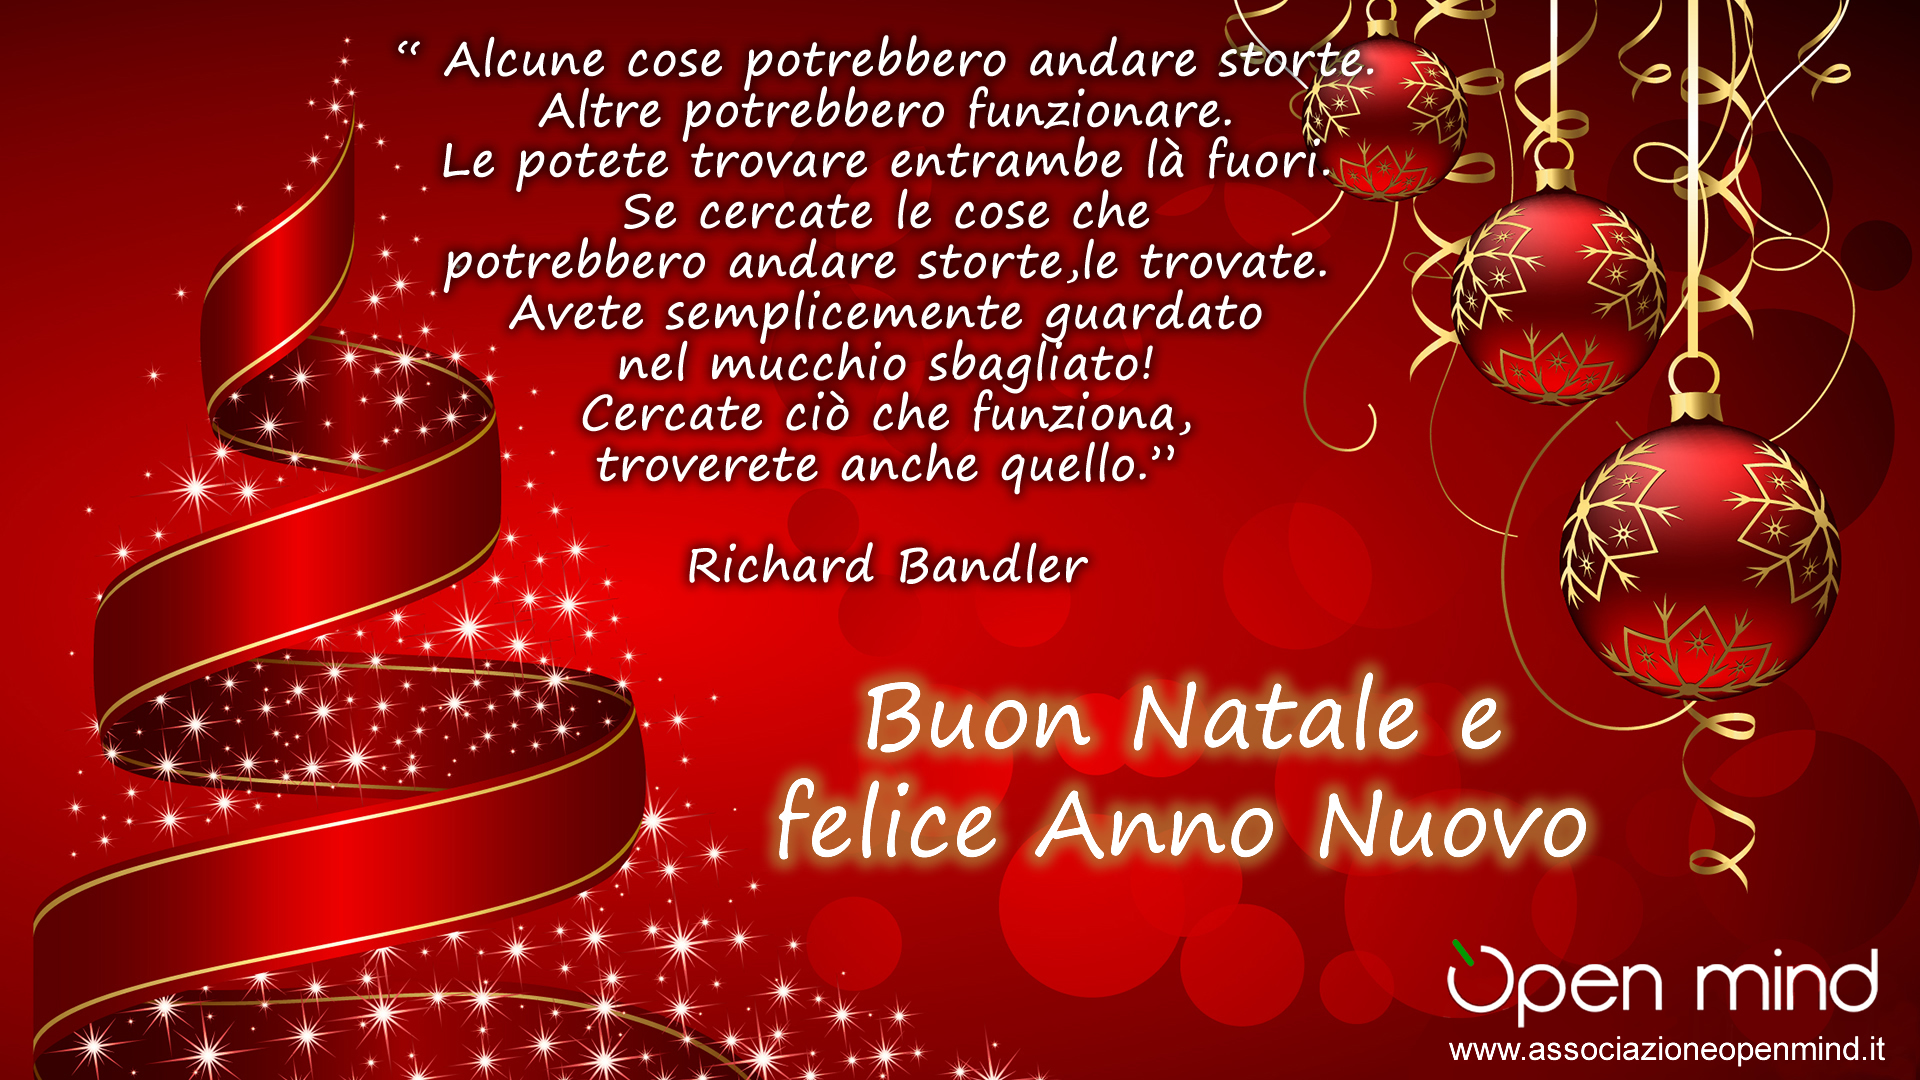 Auguri Buon Natale E Felice Anno Nuovo Frasi.Auguri Di Buon Natale E Felice 2014 E Cerca Bene Open Mind